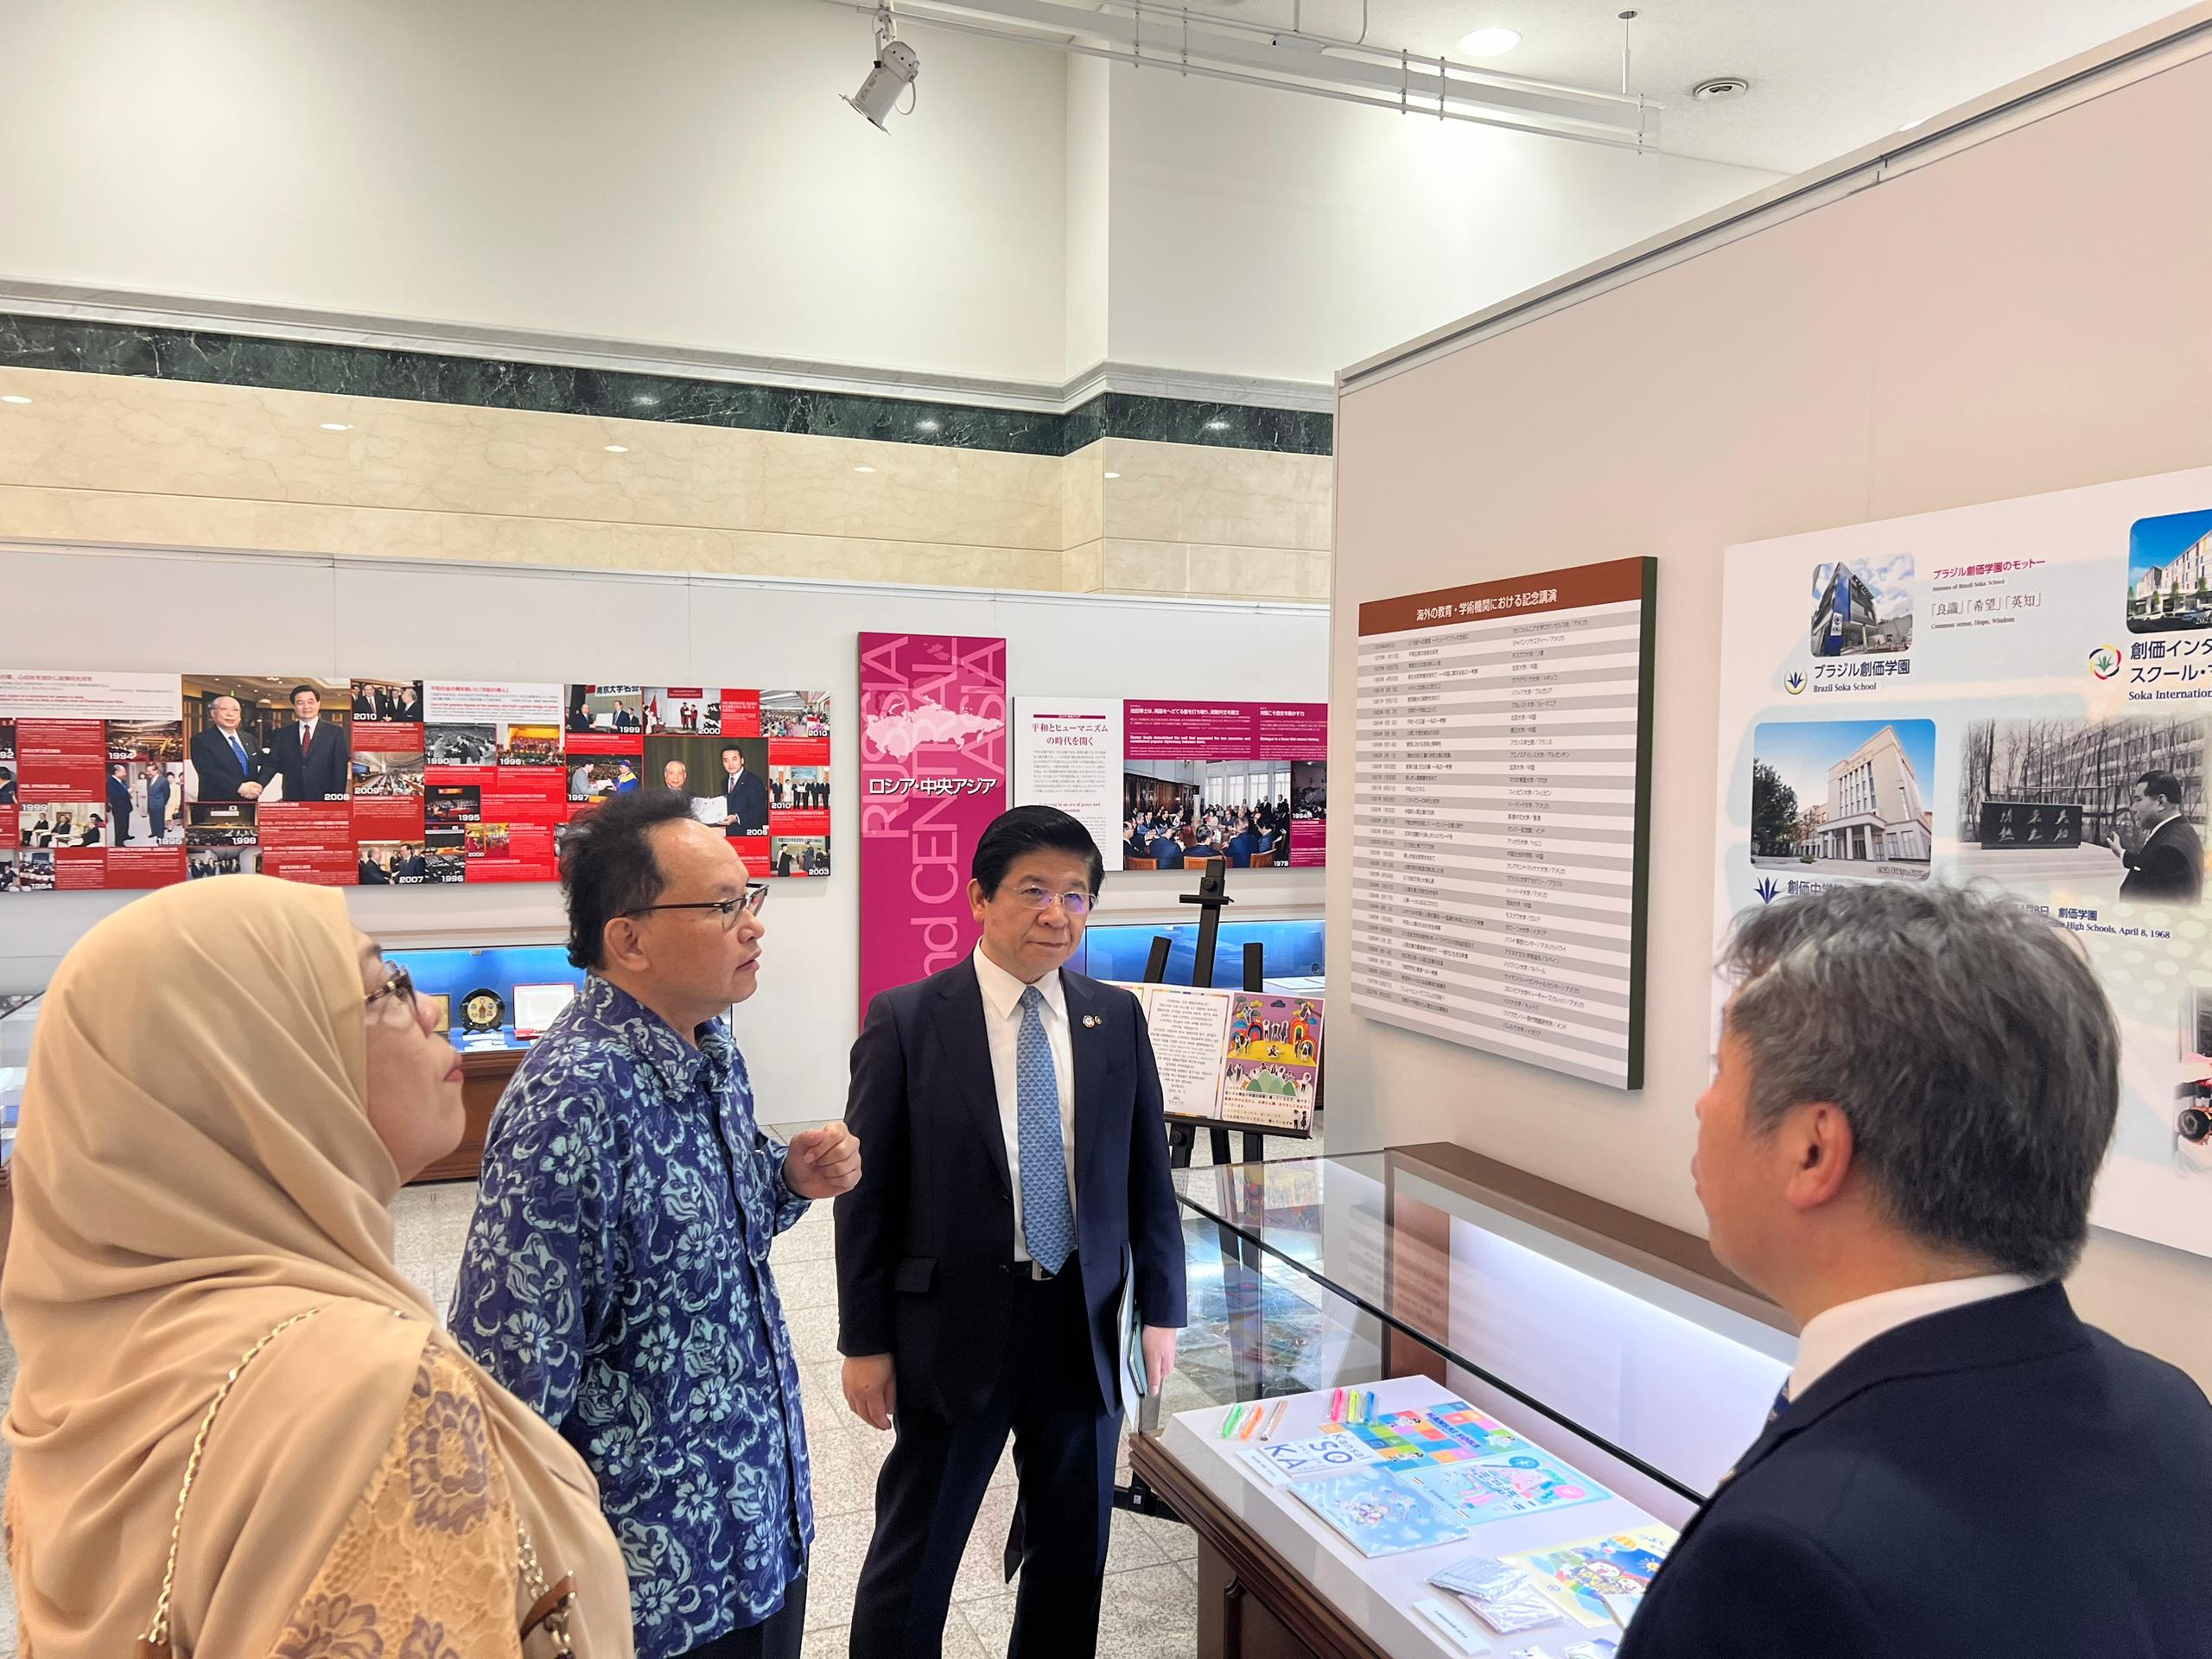 Pusat Kajian Malaysia pertama dibuka di Universiti Soka Jepun